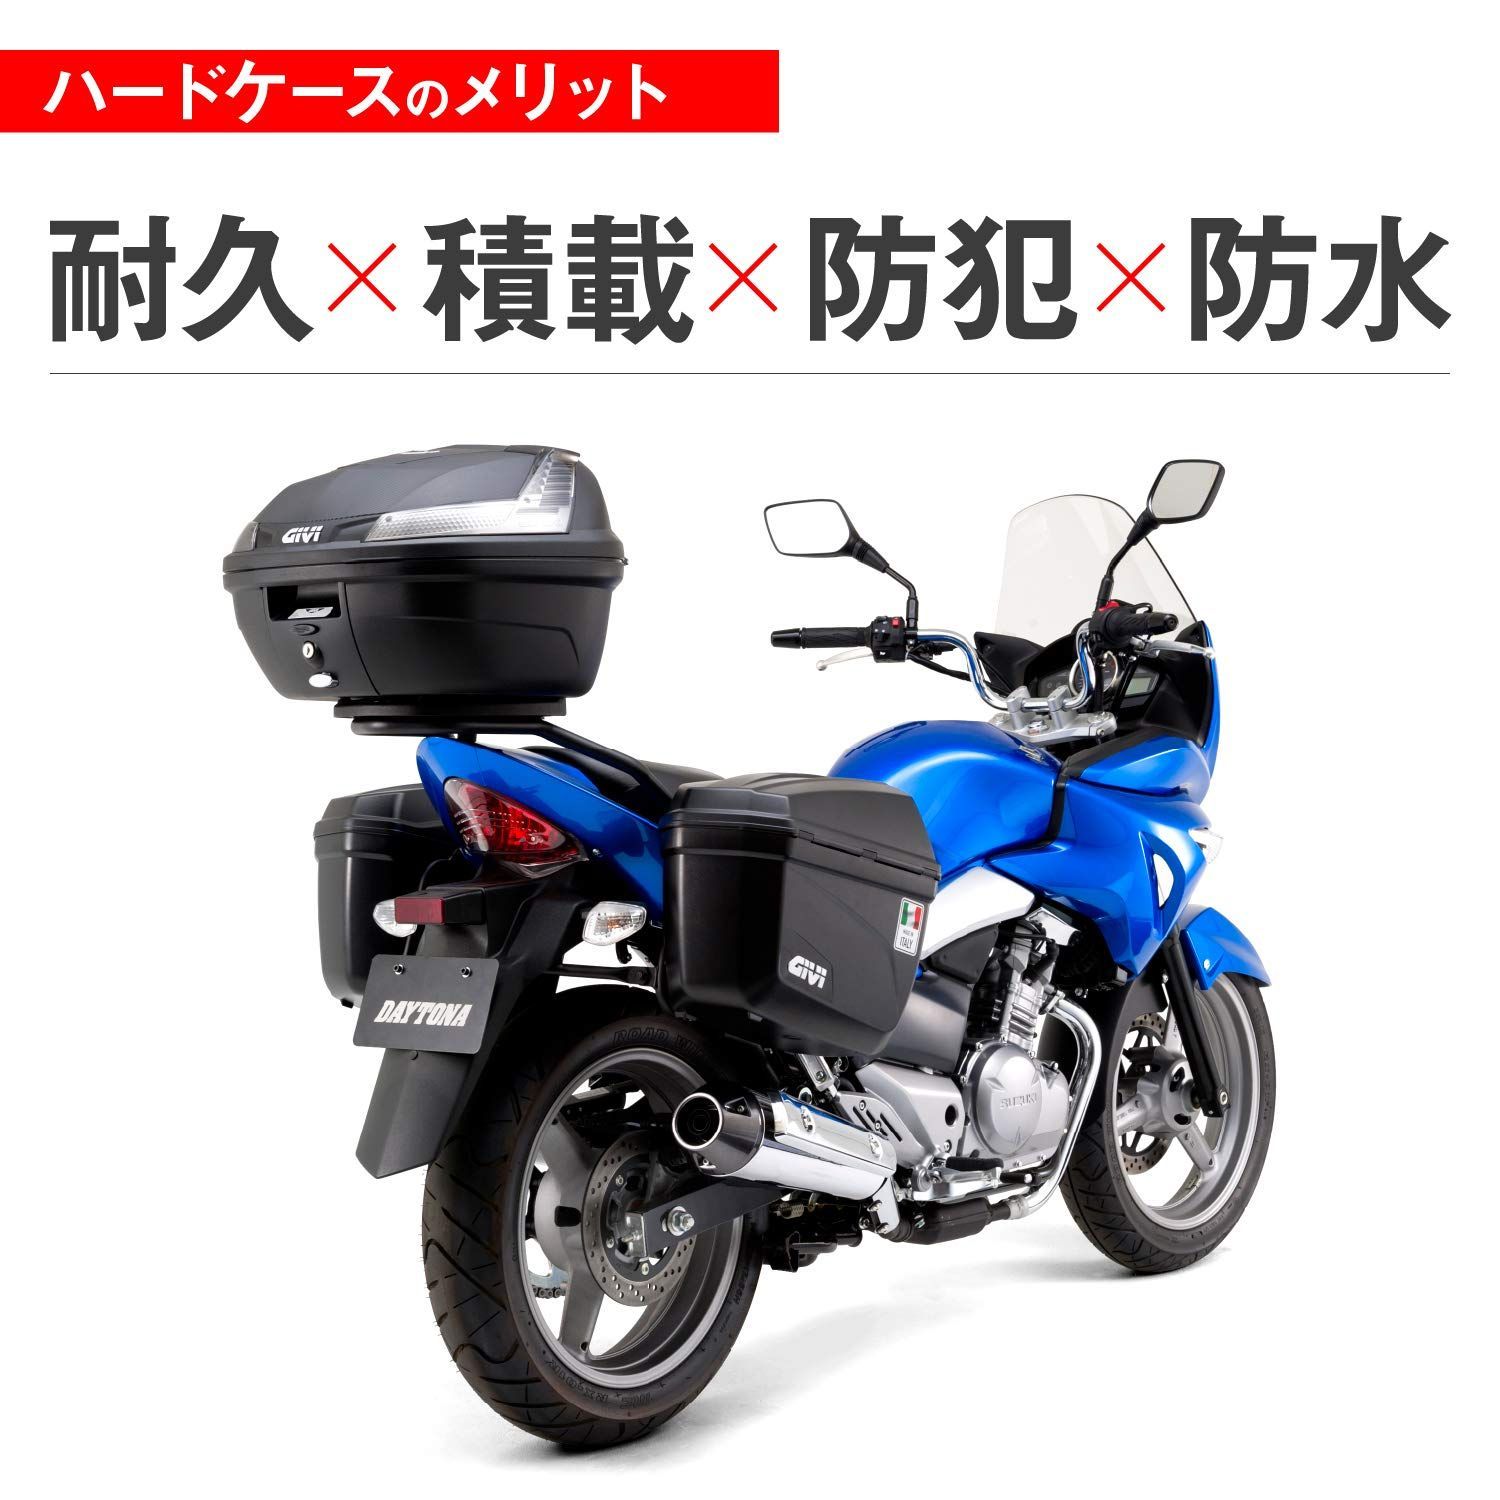 GIVI(ジビ) バイク用 リアボックス モノロック 37L BLADEシリーズ ...